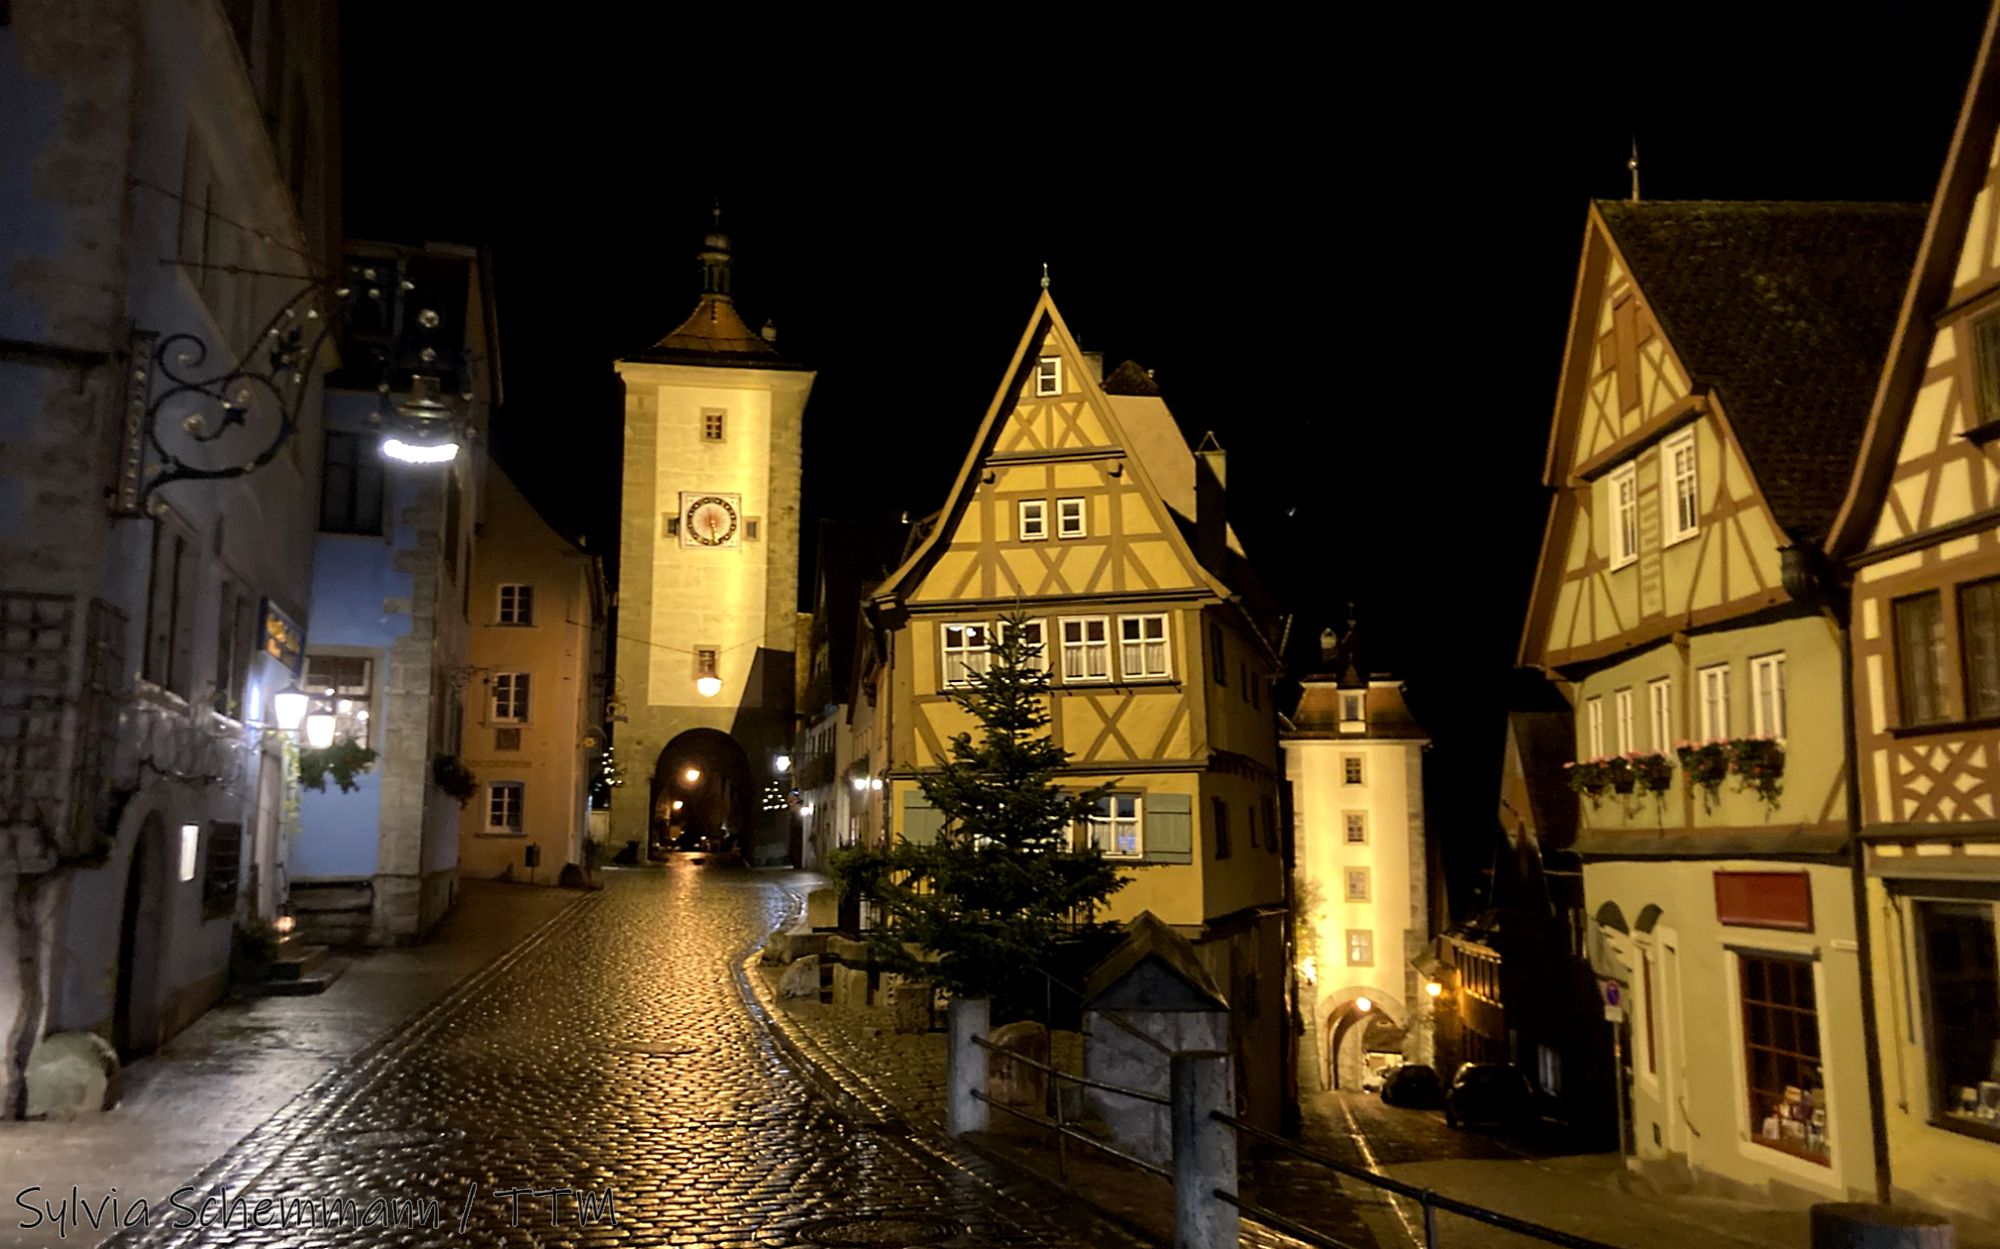 Blick auf einen historischen Turm, das Plönlein, in Rothenburg rechts davon sind Fachwerkhäuser zu sehen, vor einem dunklen Nachthimmel.